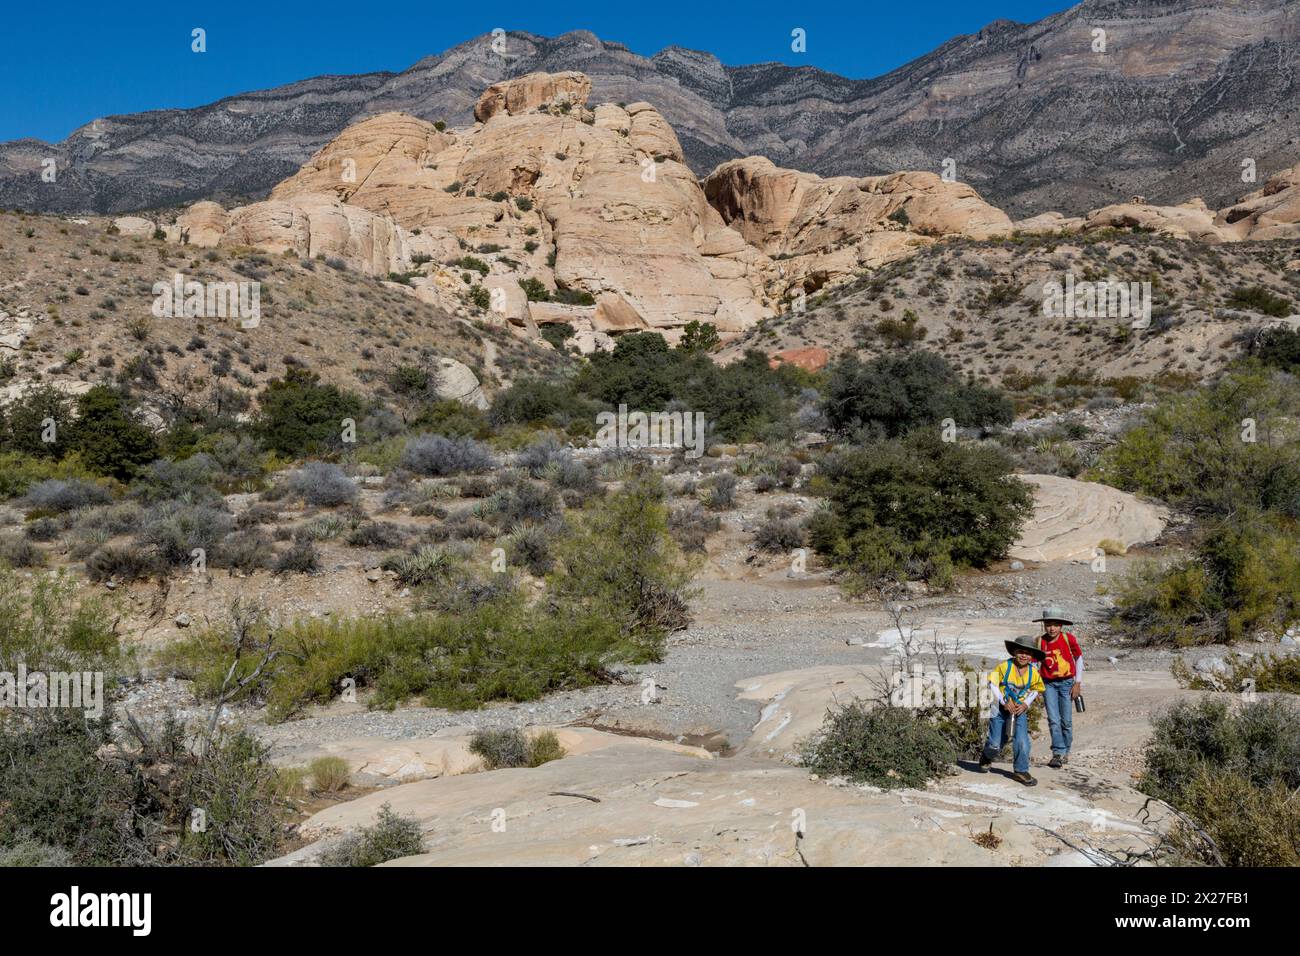 Red Rock Canyon, Nevada.  Zwei junge Boys Wandern in der Nähe von Sandstein Steinbruch.  Grauen Kalkstein Keystone Thrust im oberen Hintergrund. Stockfoto